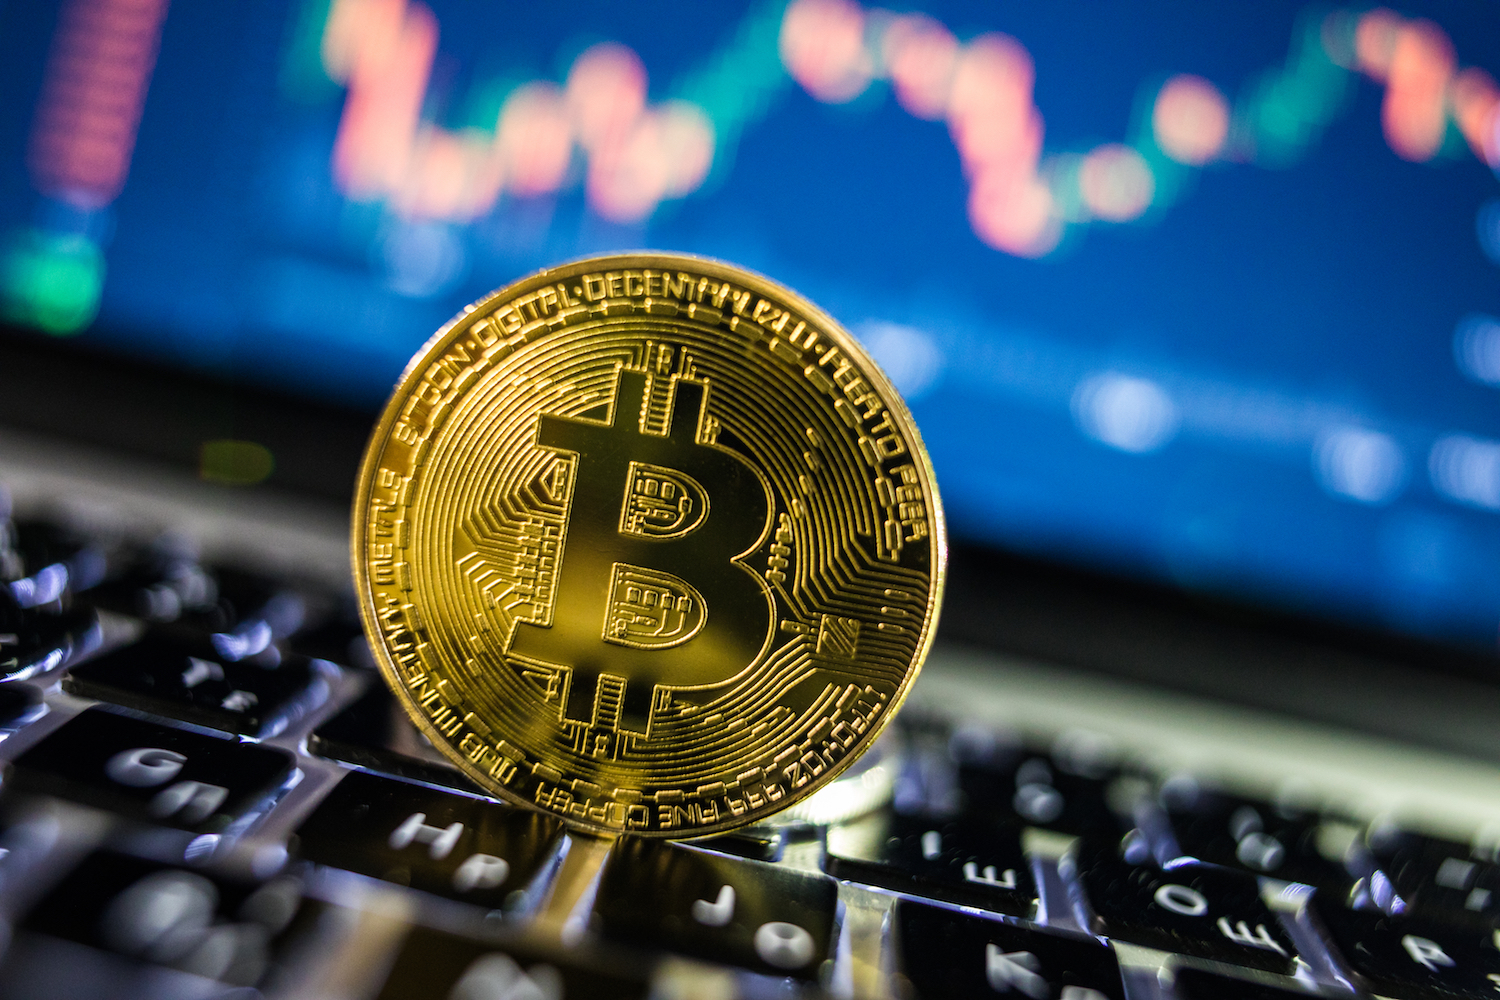 Ünlü analist Bitcoin’in büyük bir düşüş riski altında olduğunu söyledi